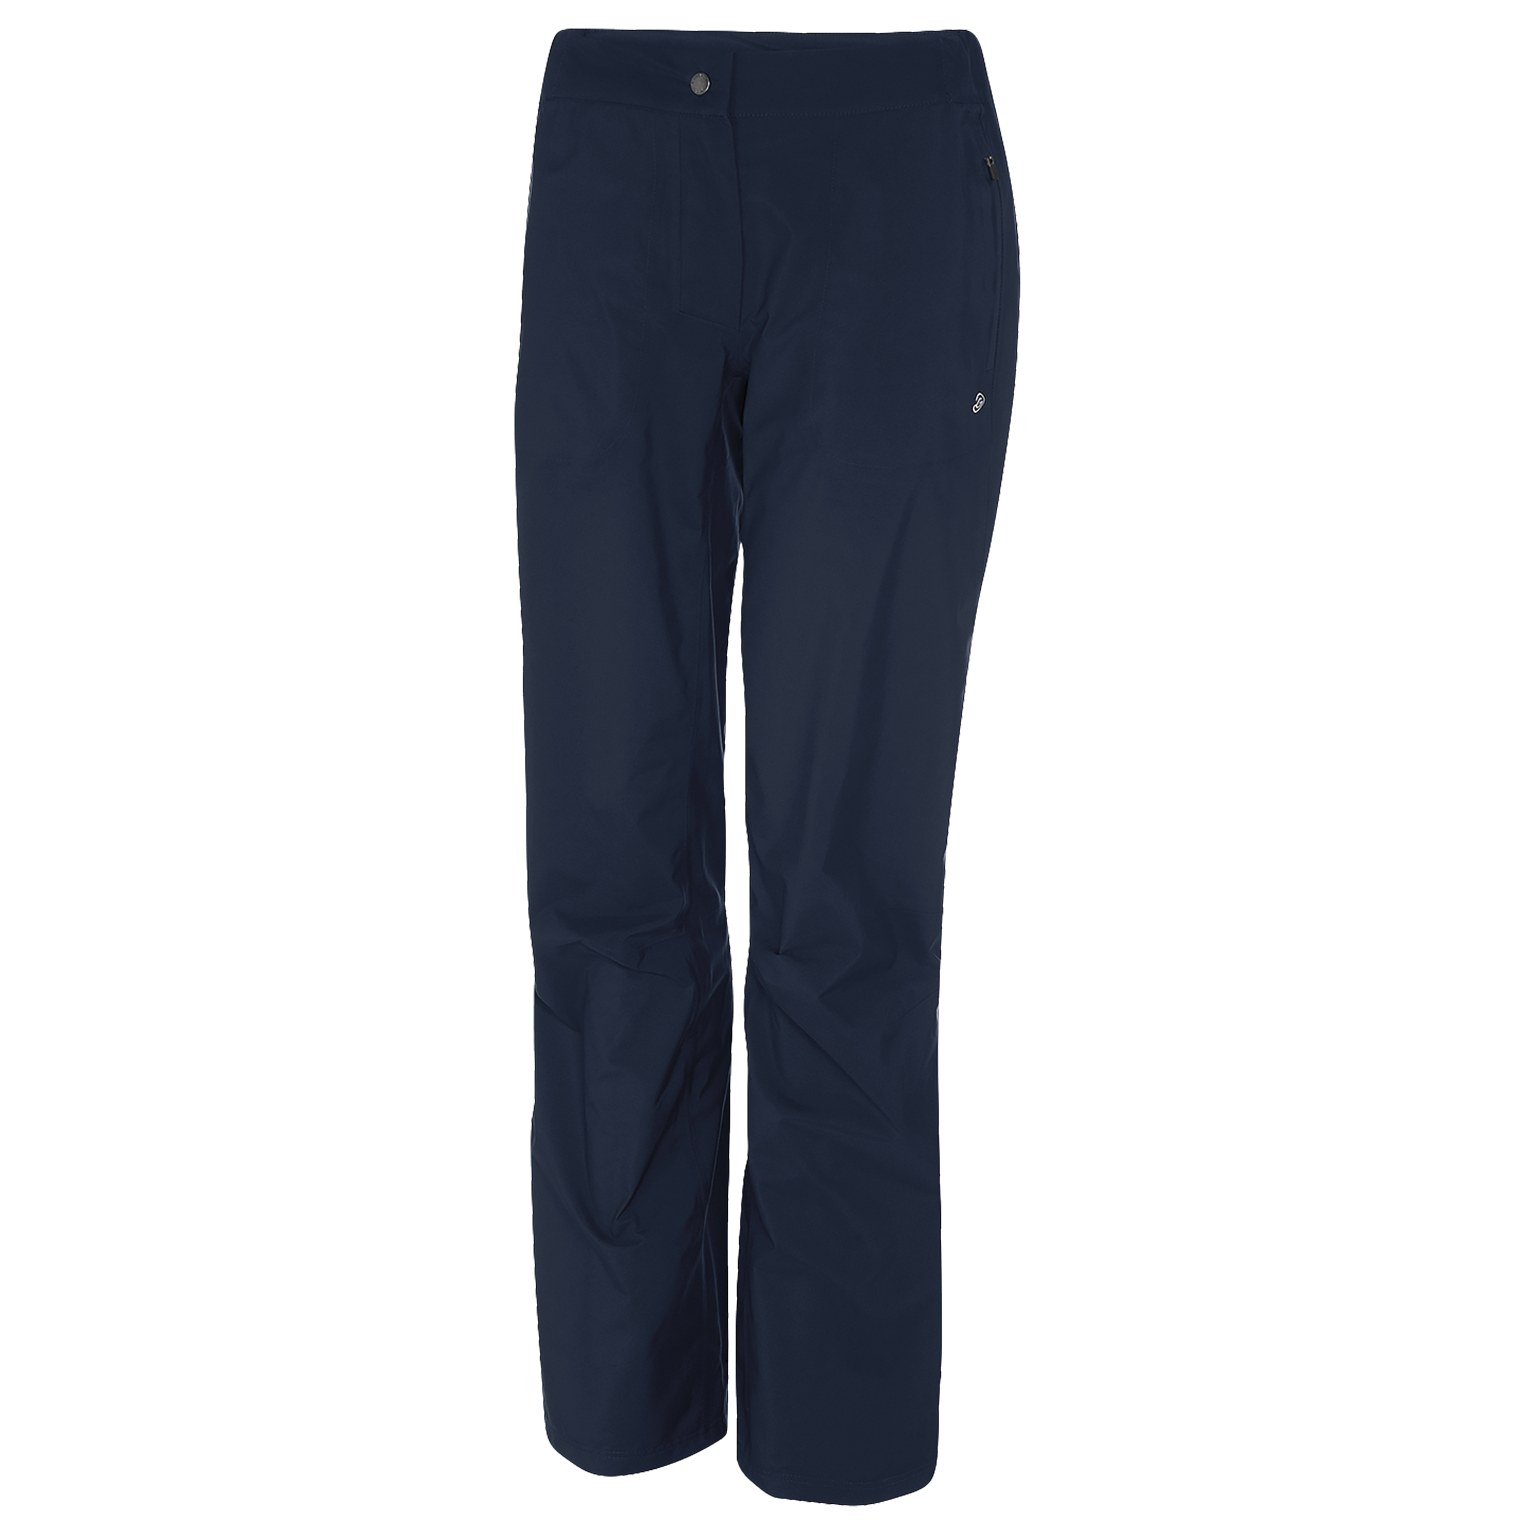 navy 'ALEXANDRA' Women's GORE-TEX Paclite® golf pants.